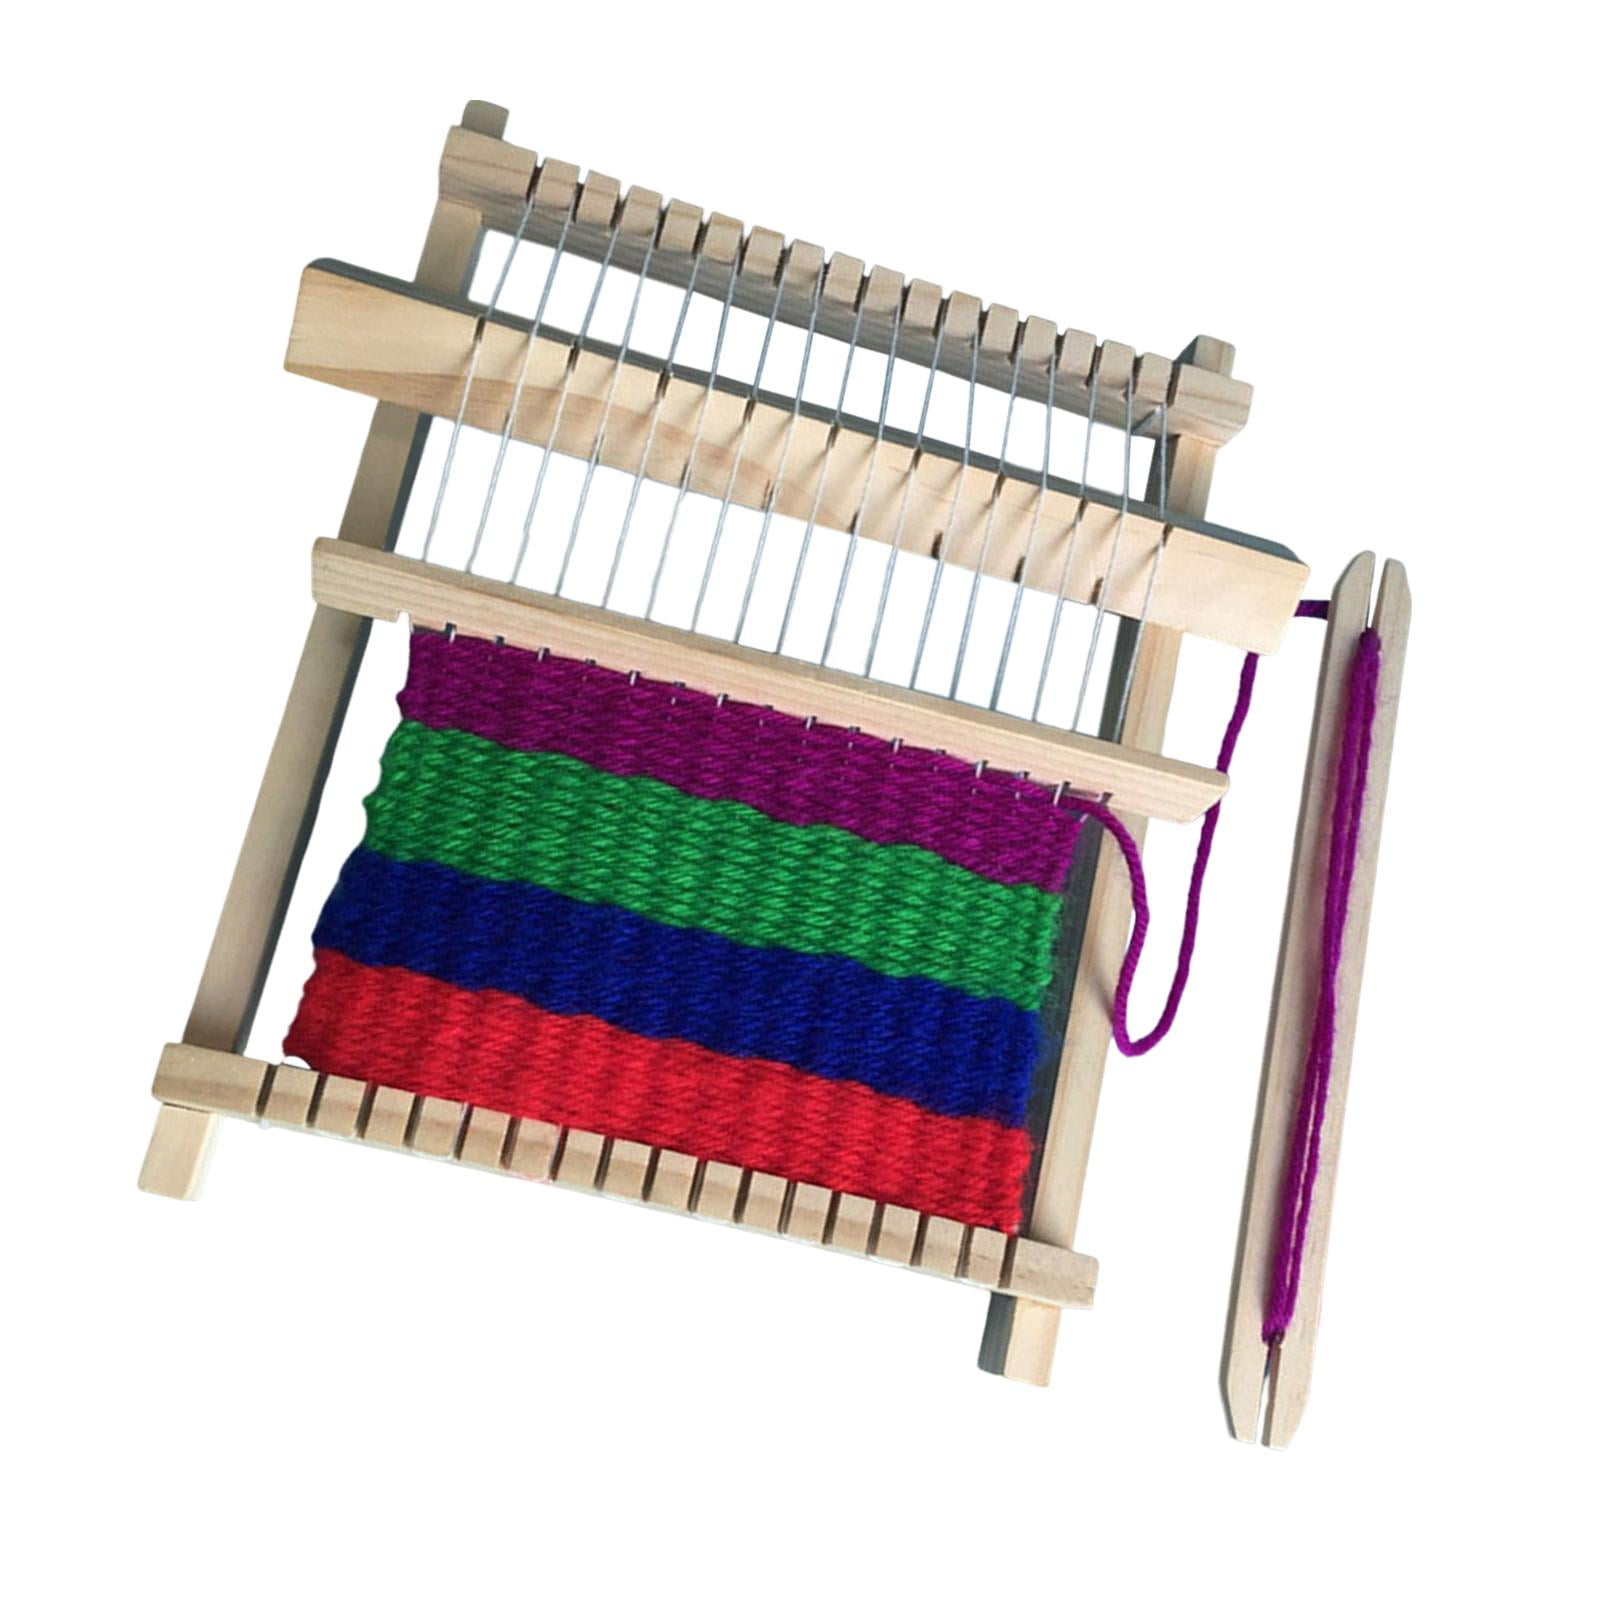 Weaving Loom Loops Potholder Loops Loom Loops Refills Multiple